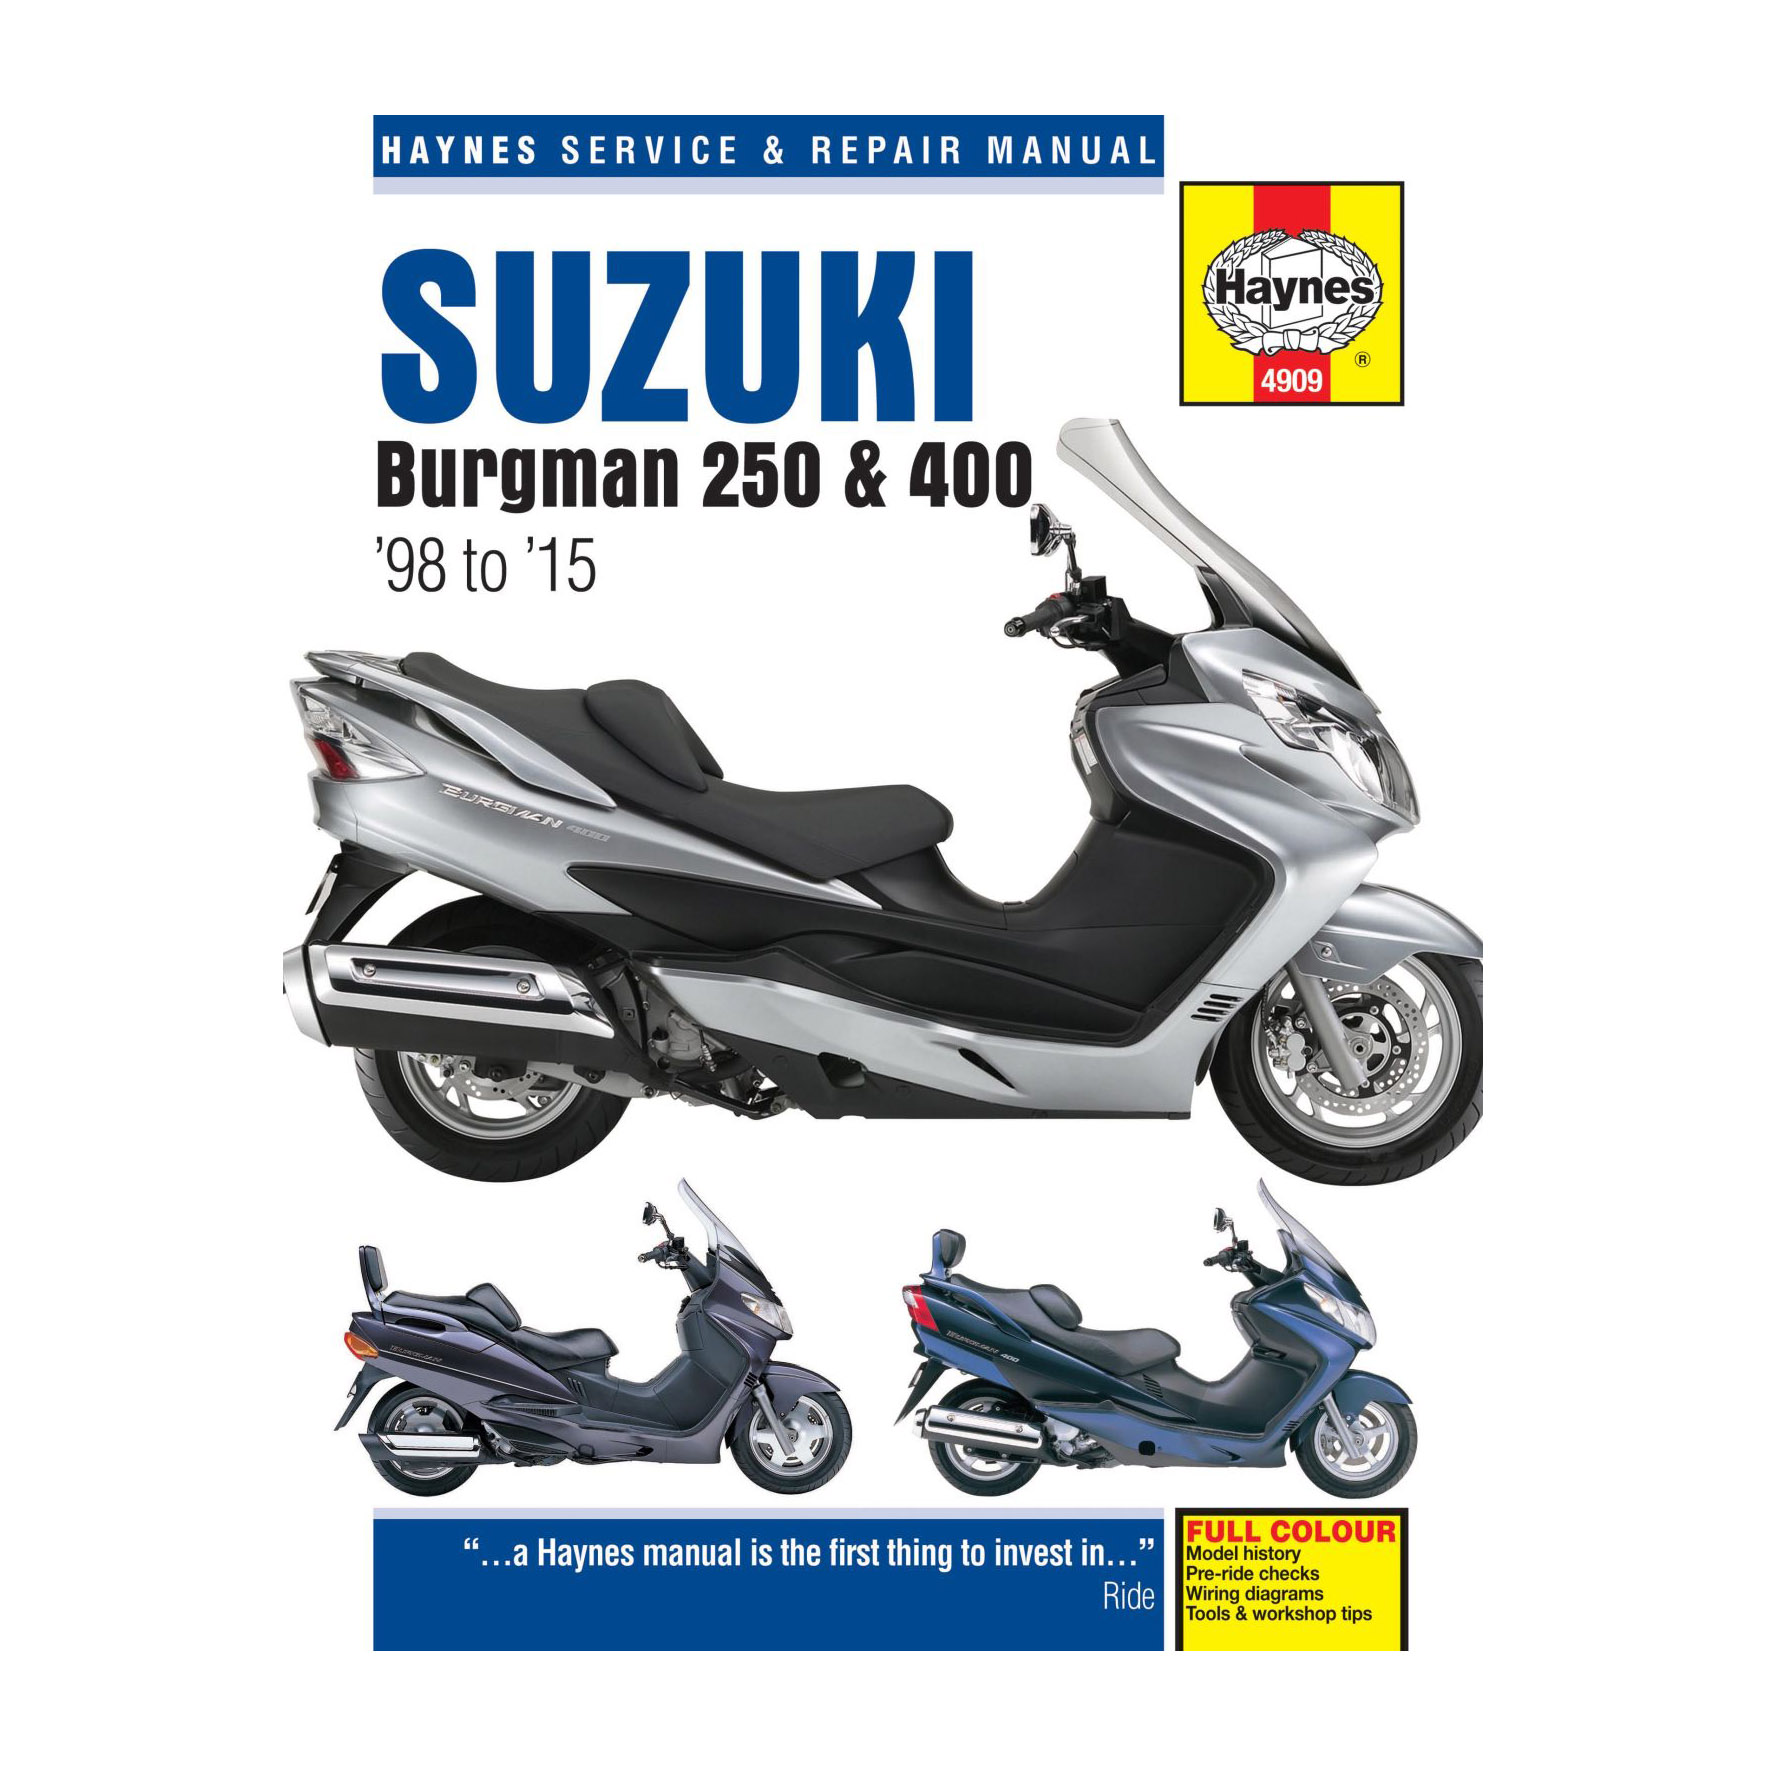 Werkstattbuch, Suzuki Burgman 250 & 400 (98-15), englisch